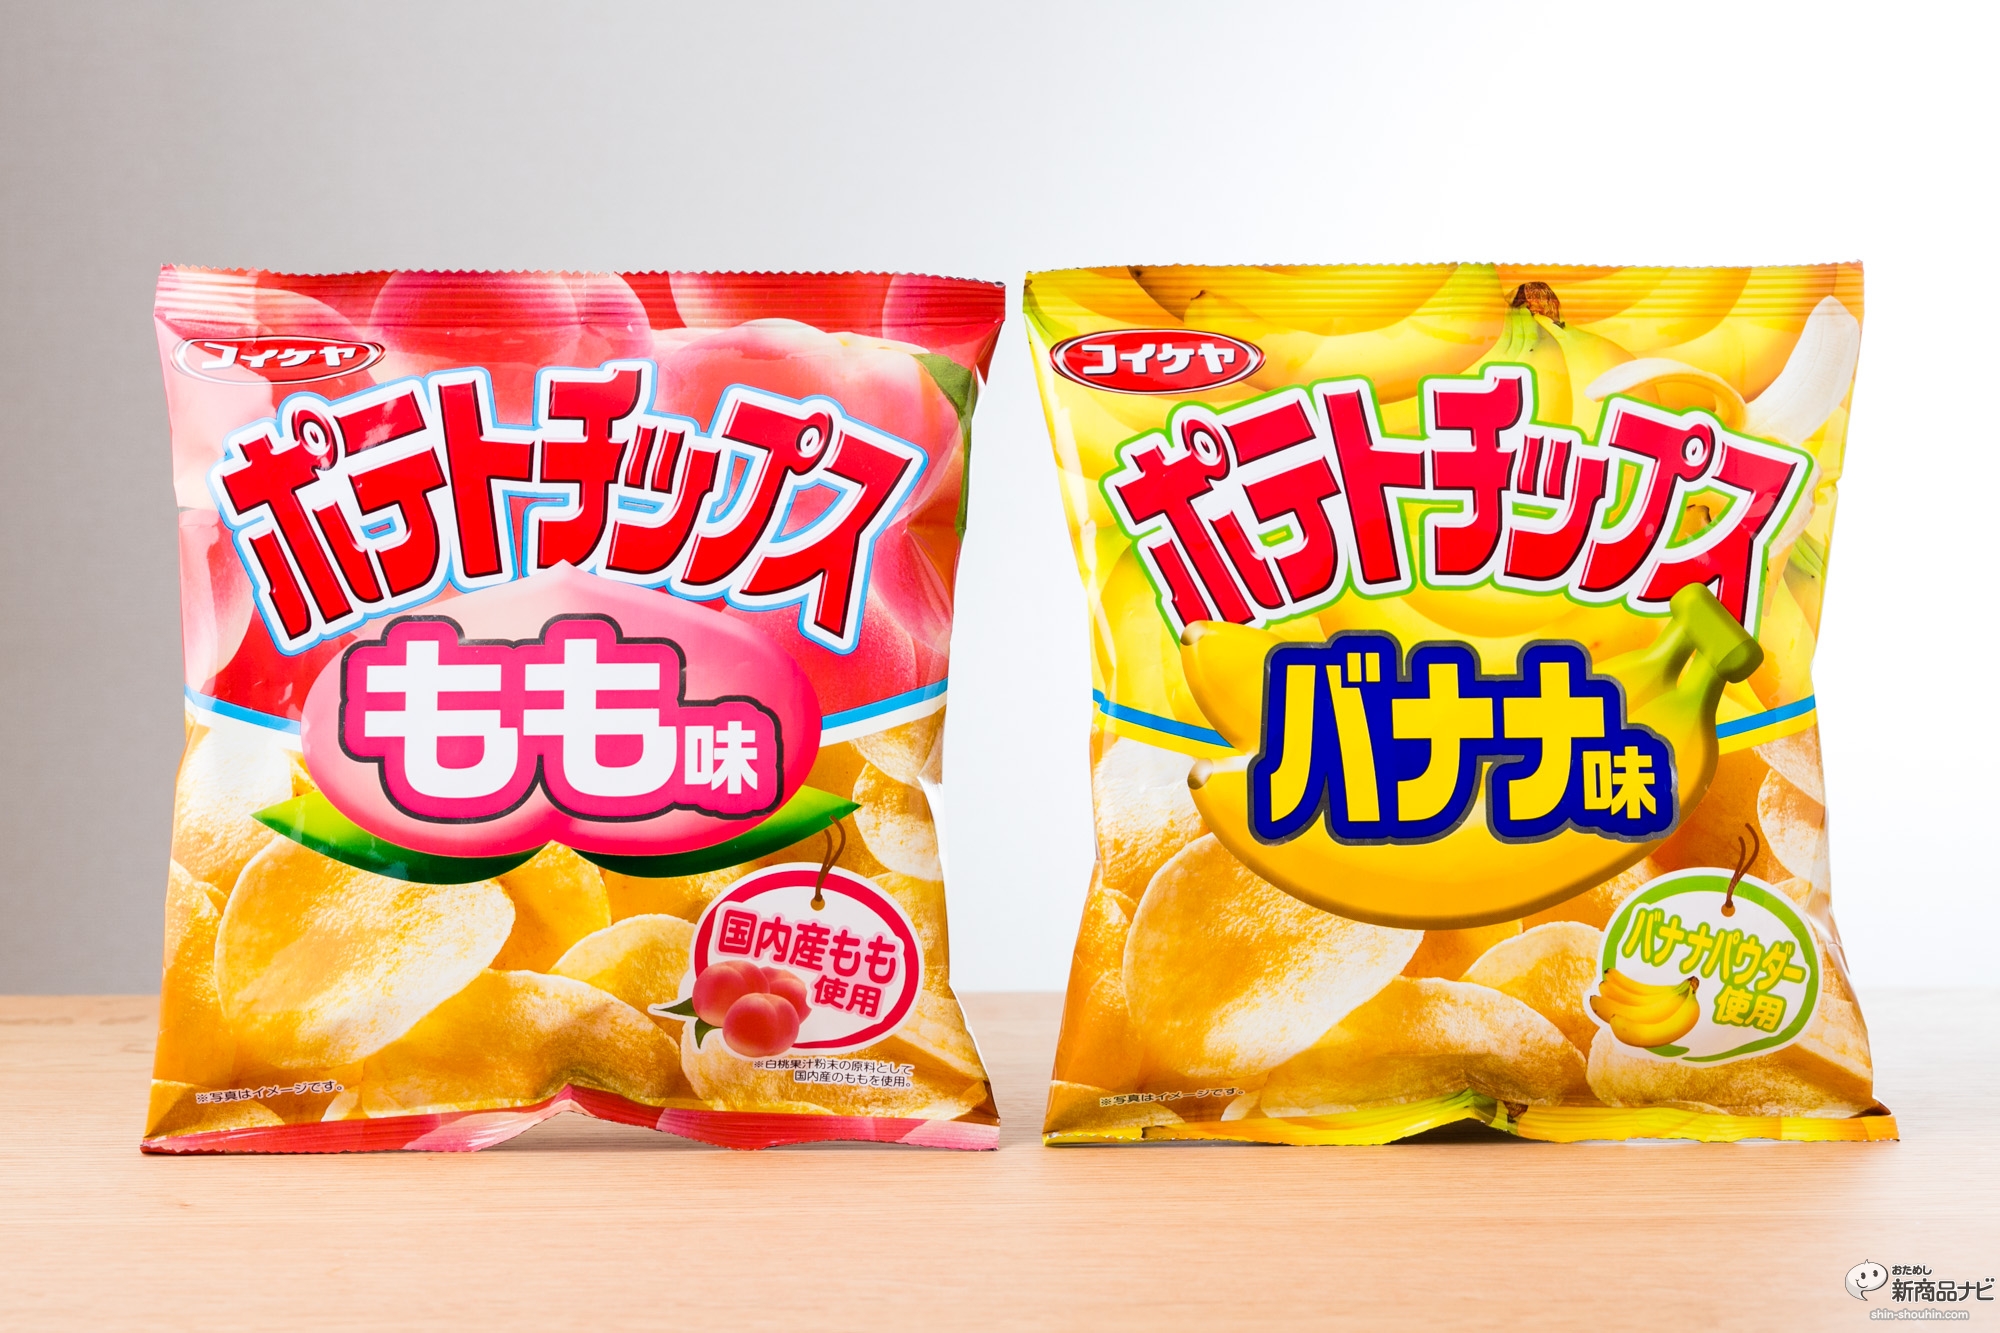 おためし新商品ナビ Blog Archive コイケヤ ポテトチップス もも味 バナナ味 甘さ広がるフルーツ味のポテチ は果たしてアリなのか 検証